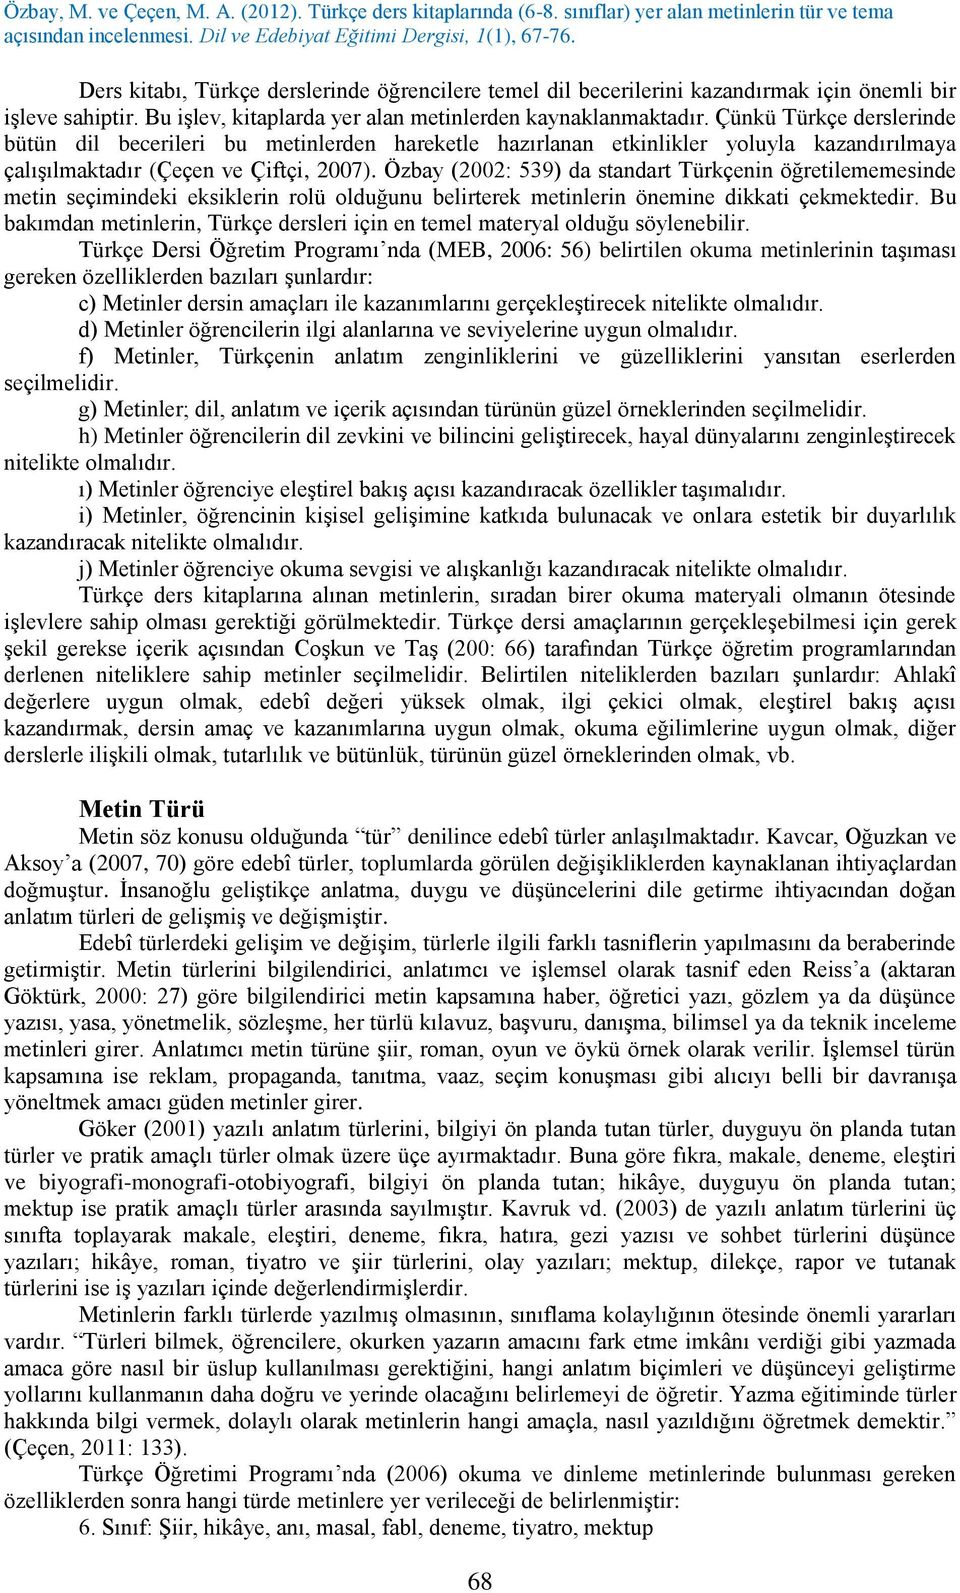 Özbay (2002: 539) da standart Türkçenin öğretilememesinde metin seçimindeki eksiklerin rolü olduğunu belirterek metinlerin önemine dikkati çekmektedir.